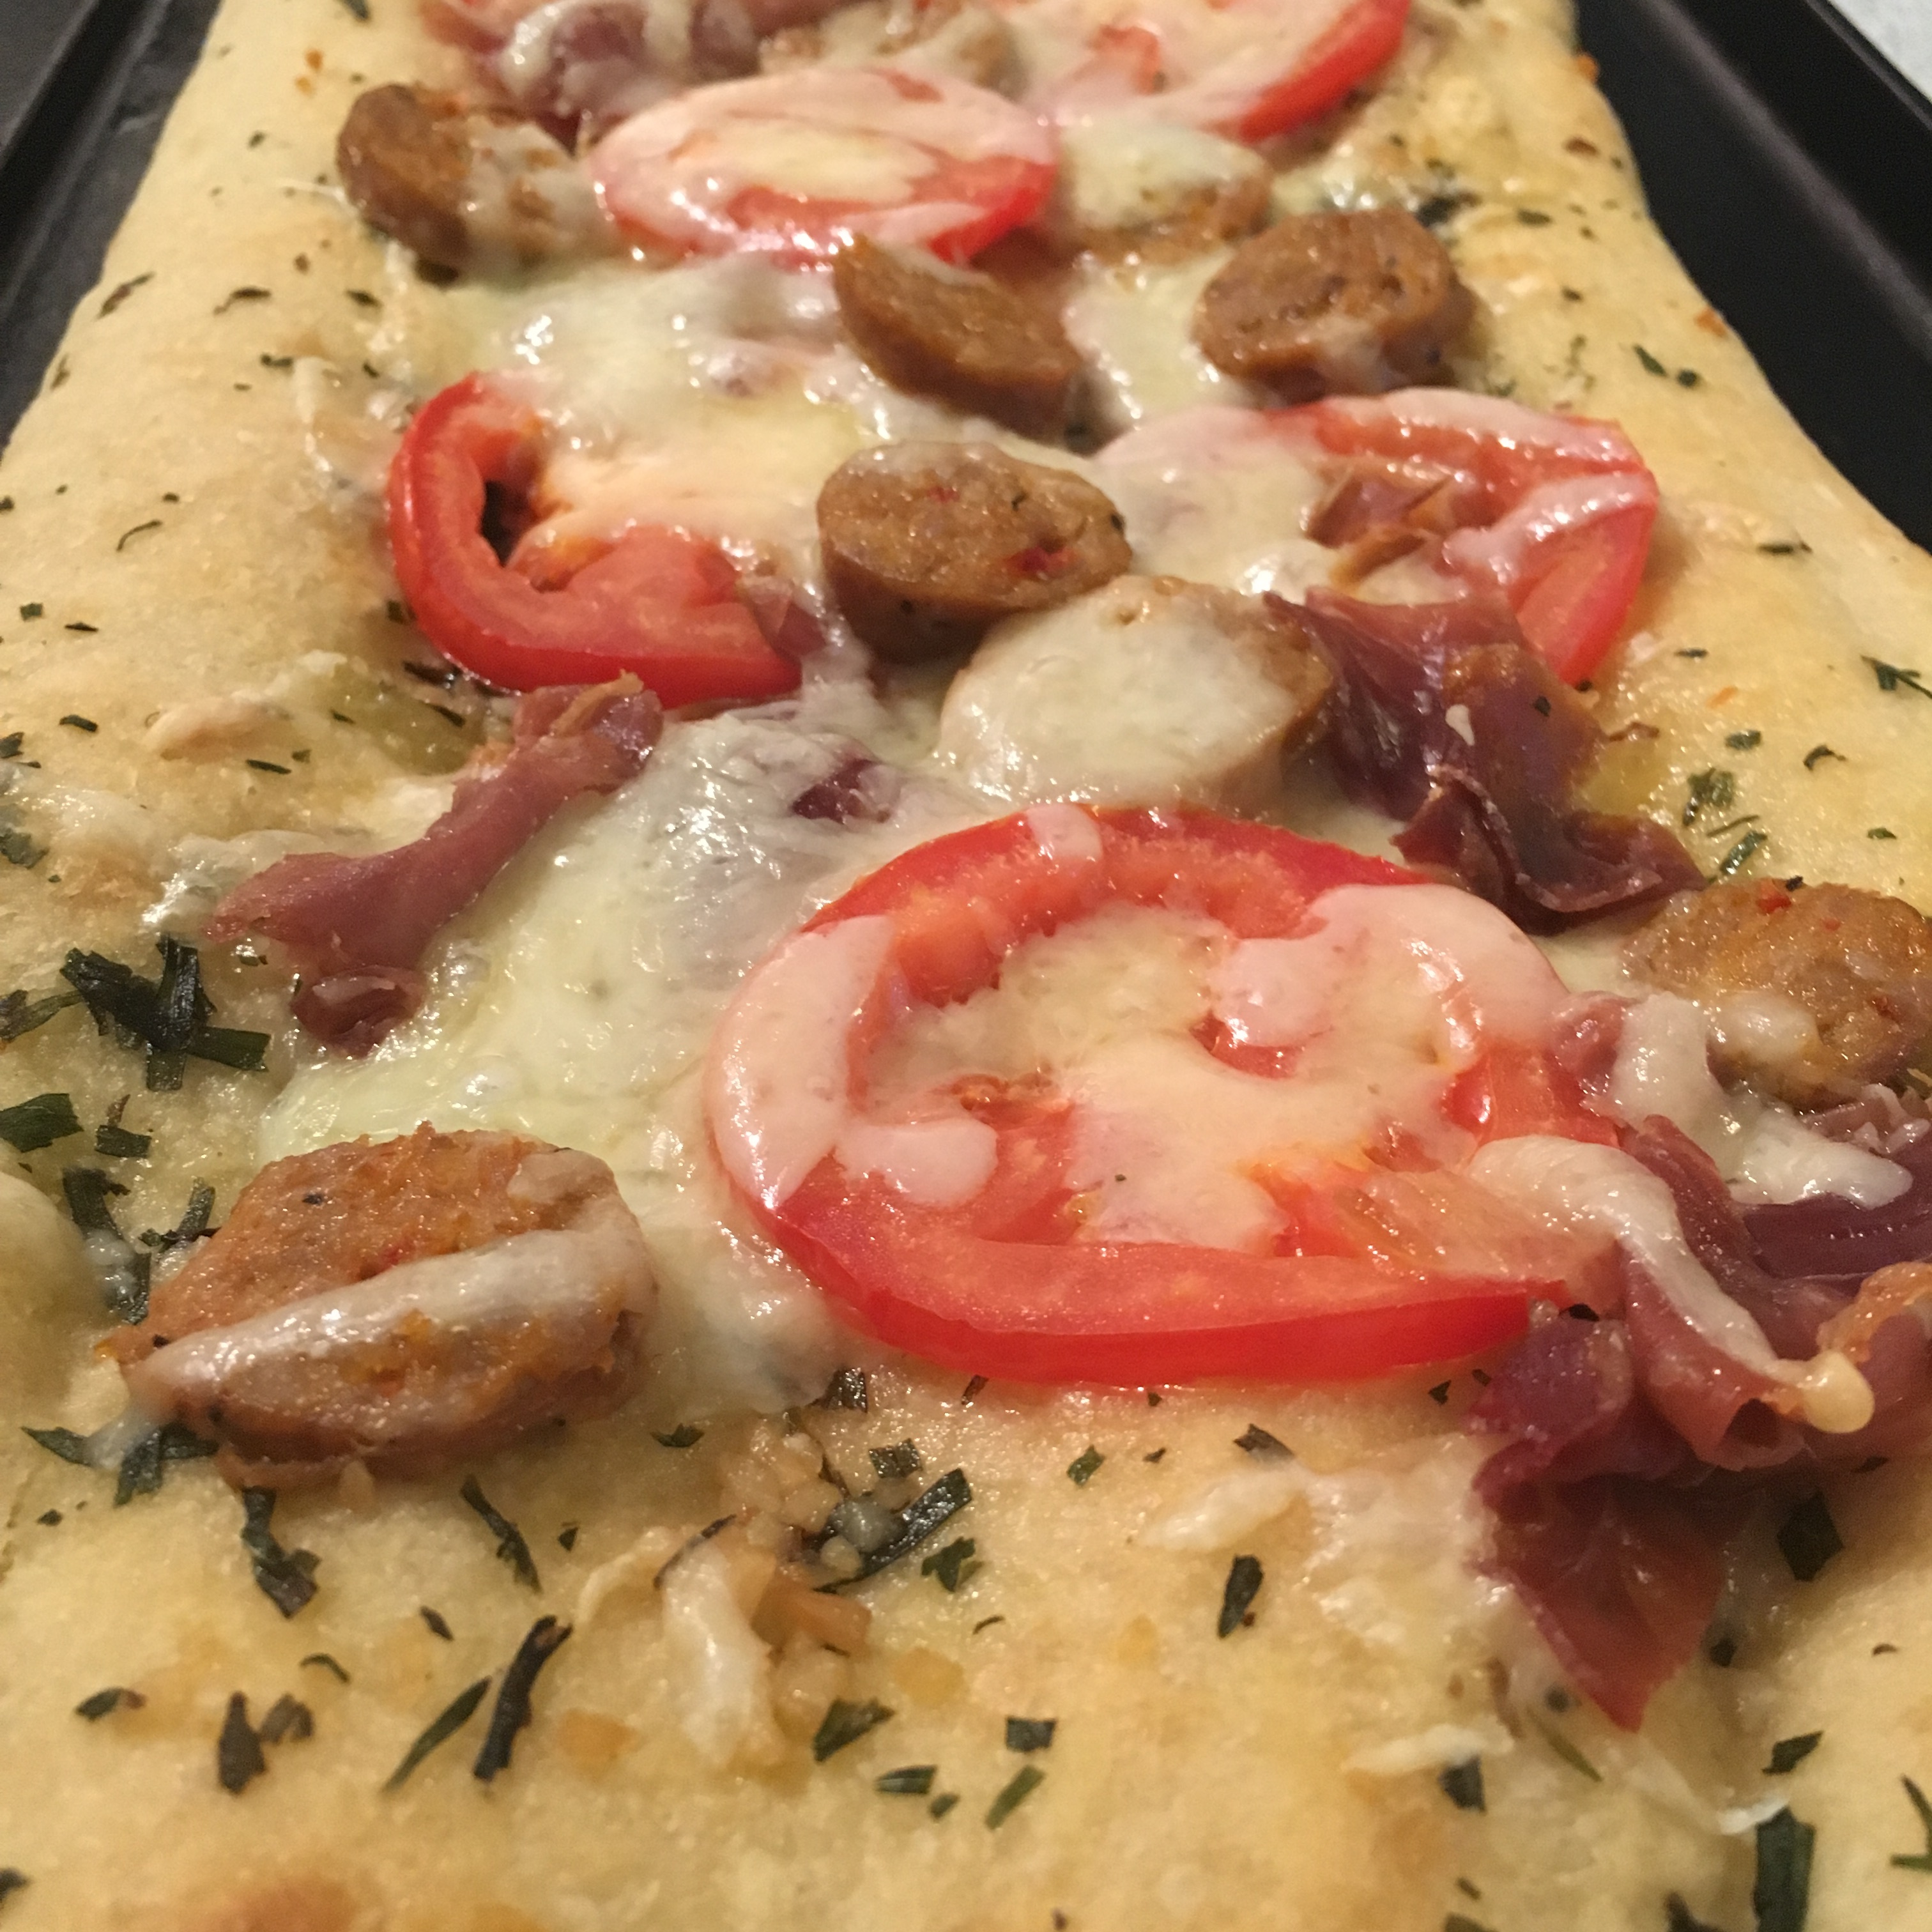 Fokachio Flat Bread Pizza with tomato, basil, garlic, prosciutto, Italian sausage, mozzarella and olive oil